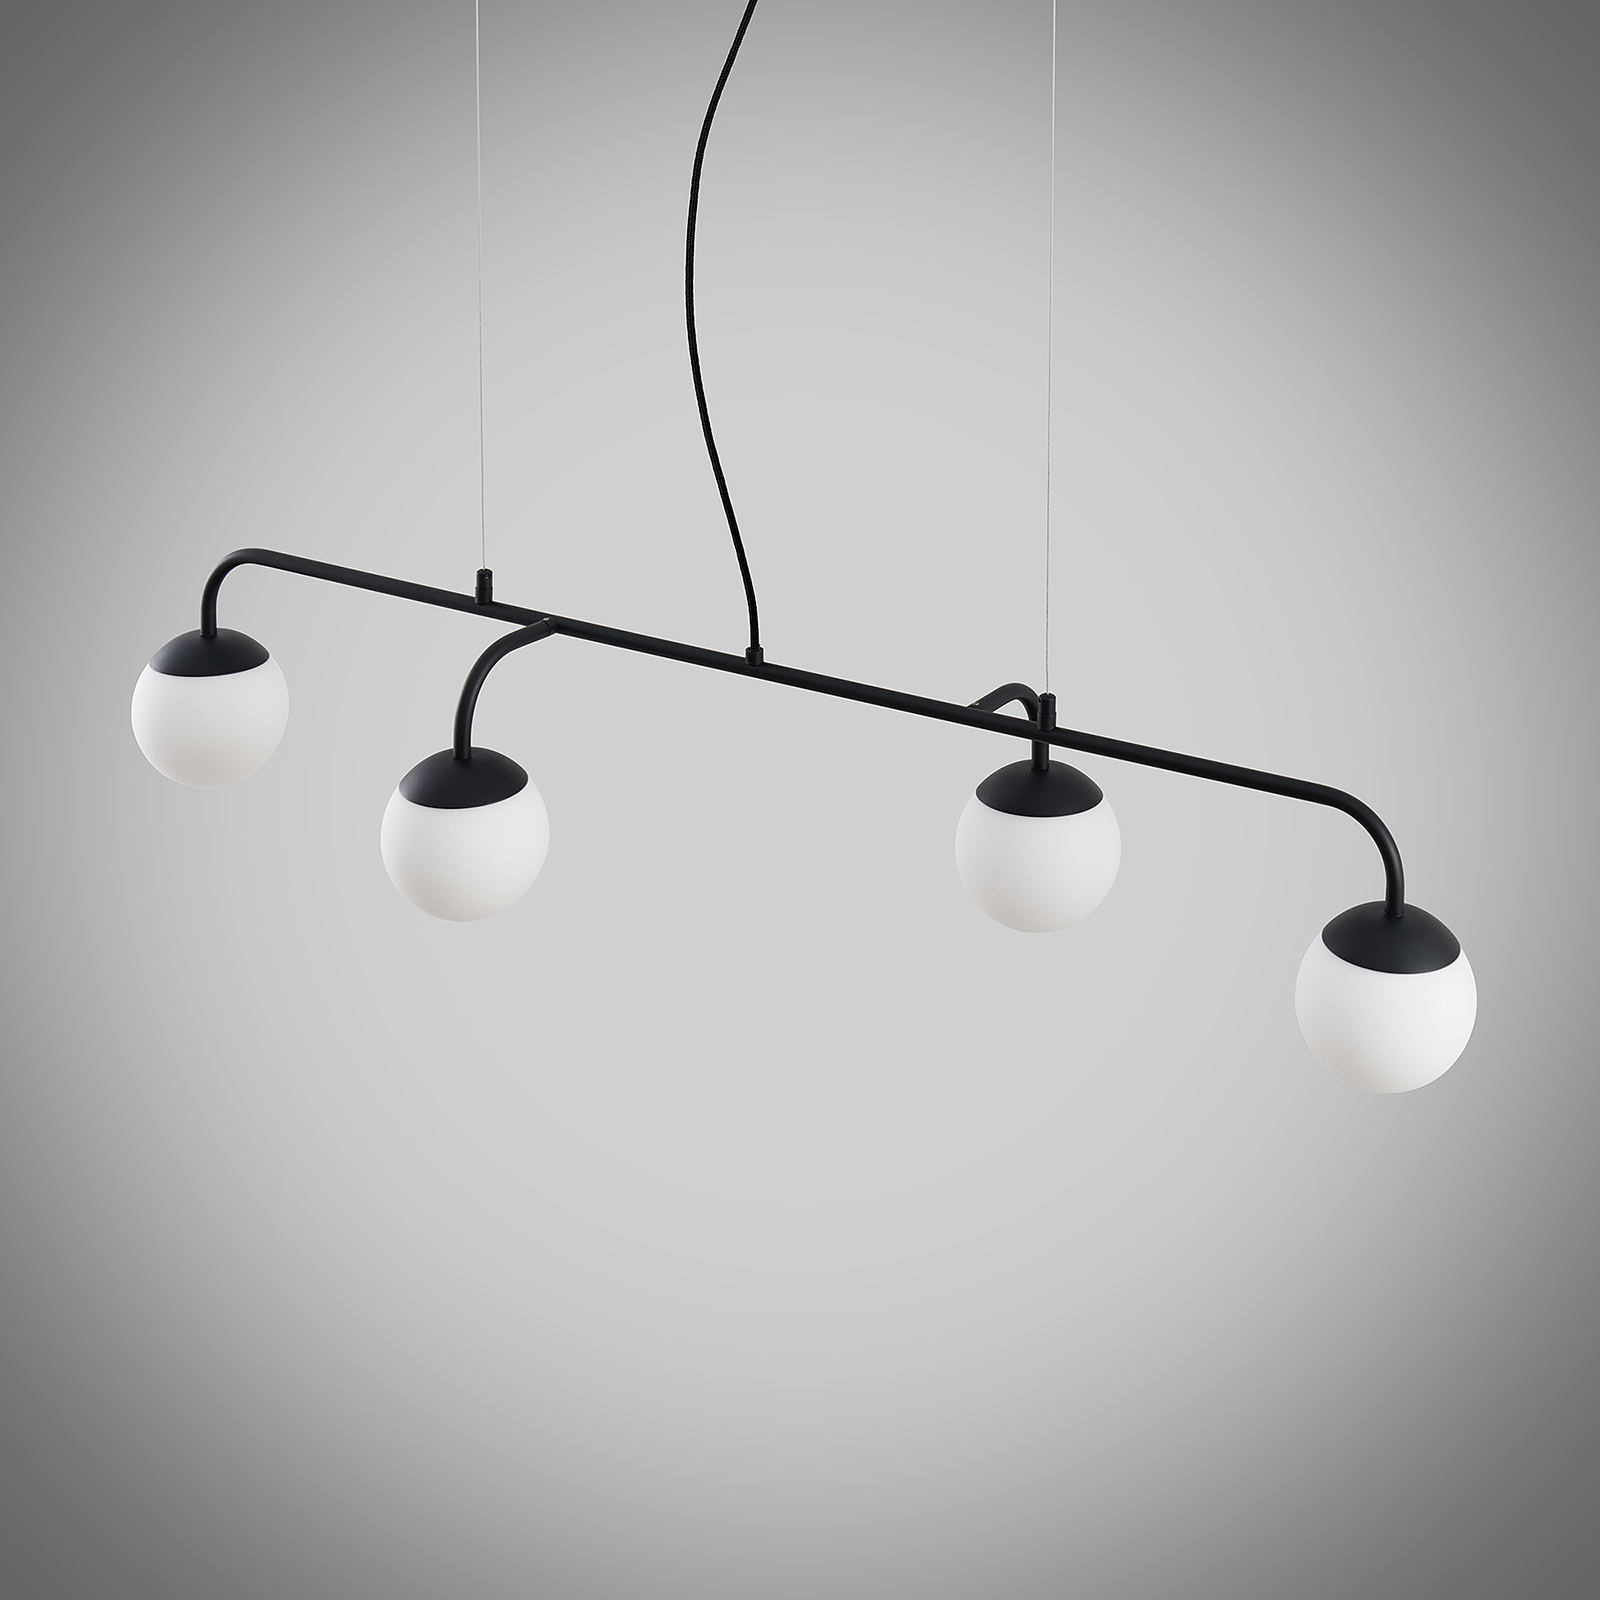 Lucande hanglamp Rama, zwart, ijzer, glas, 112 cm lang